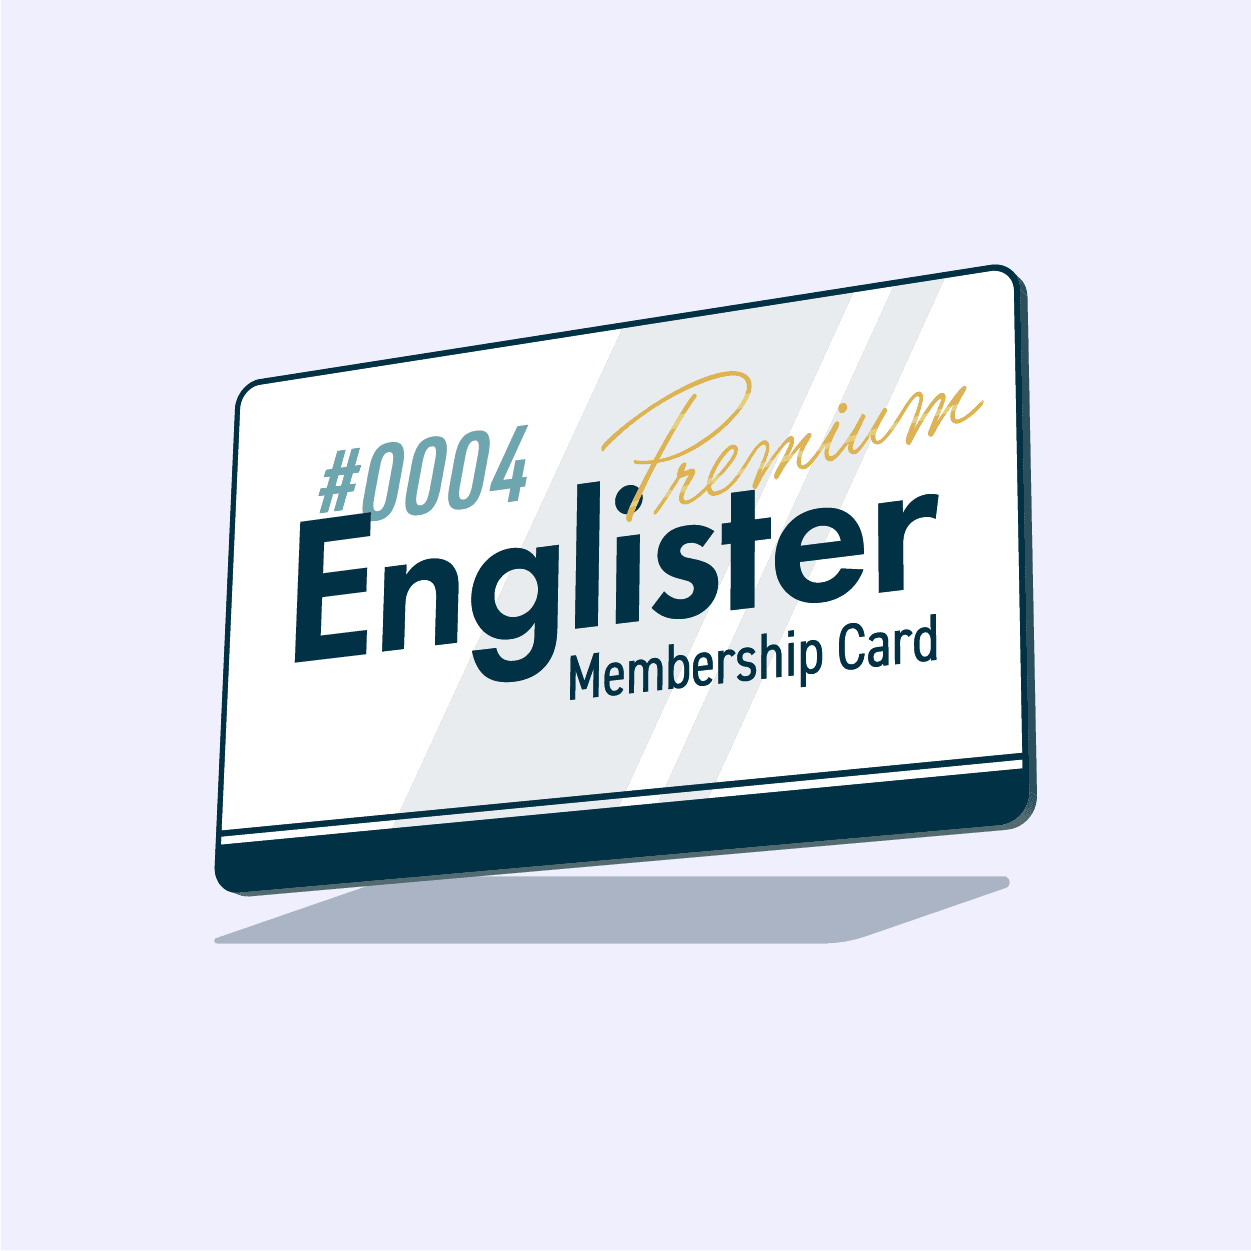 Englister Premium Membership #0004